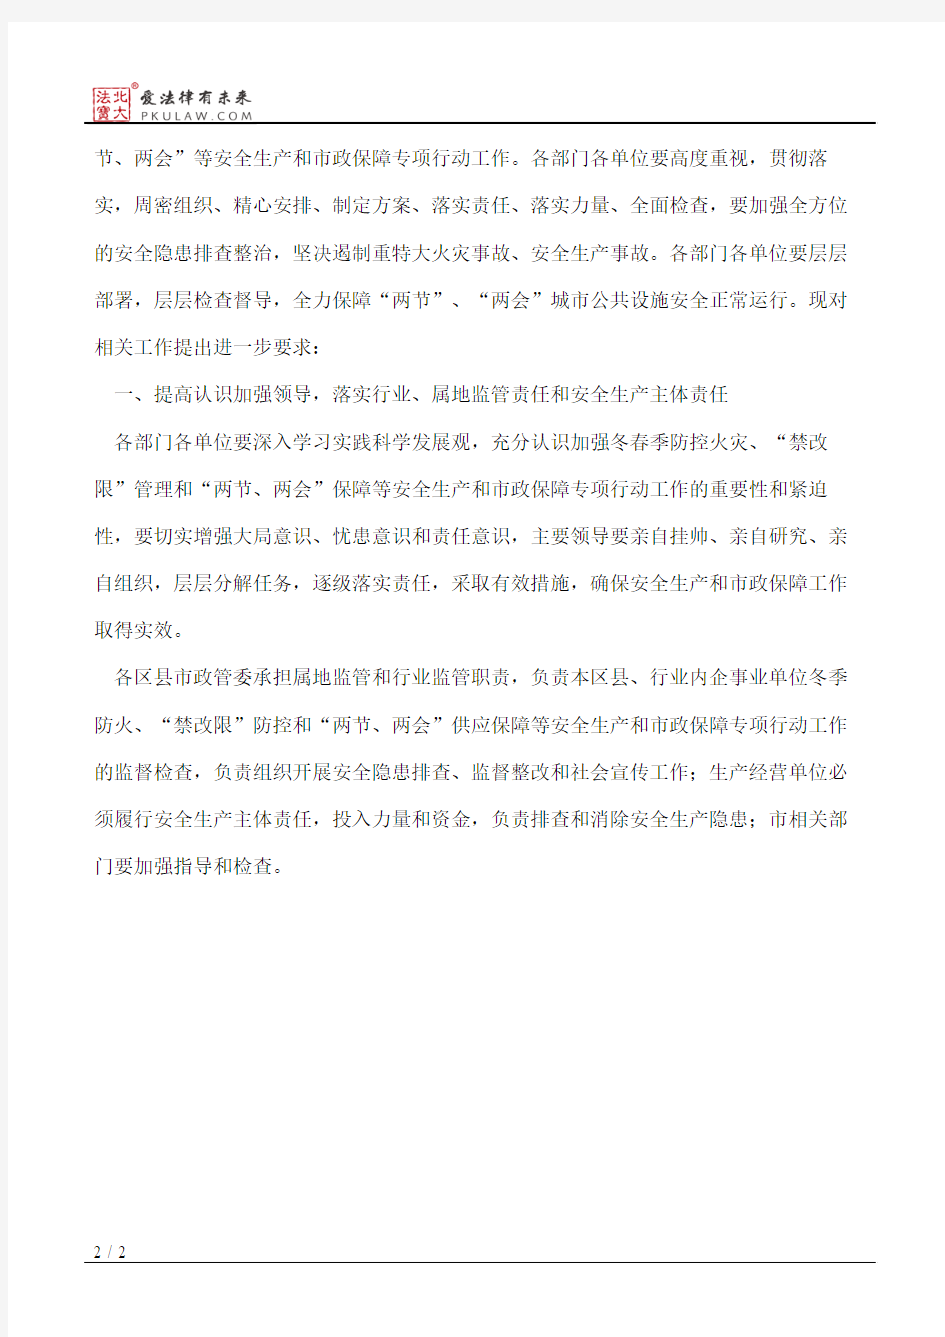 北京市市政管理委员会关于进一步做好今冬明春安全生产和市政保障